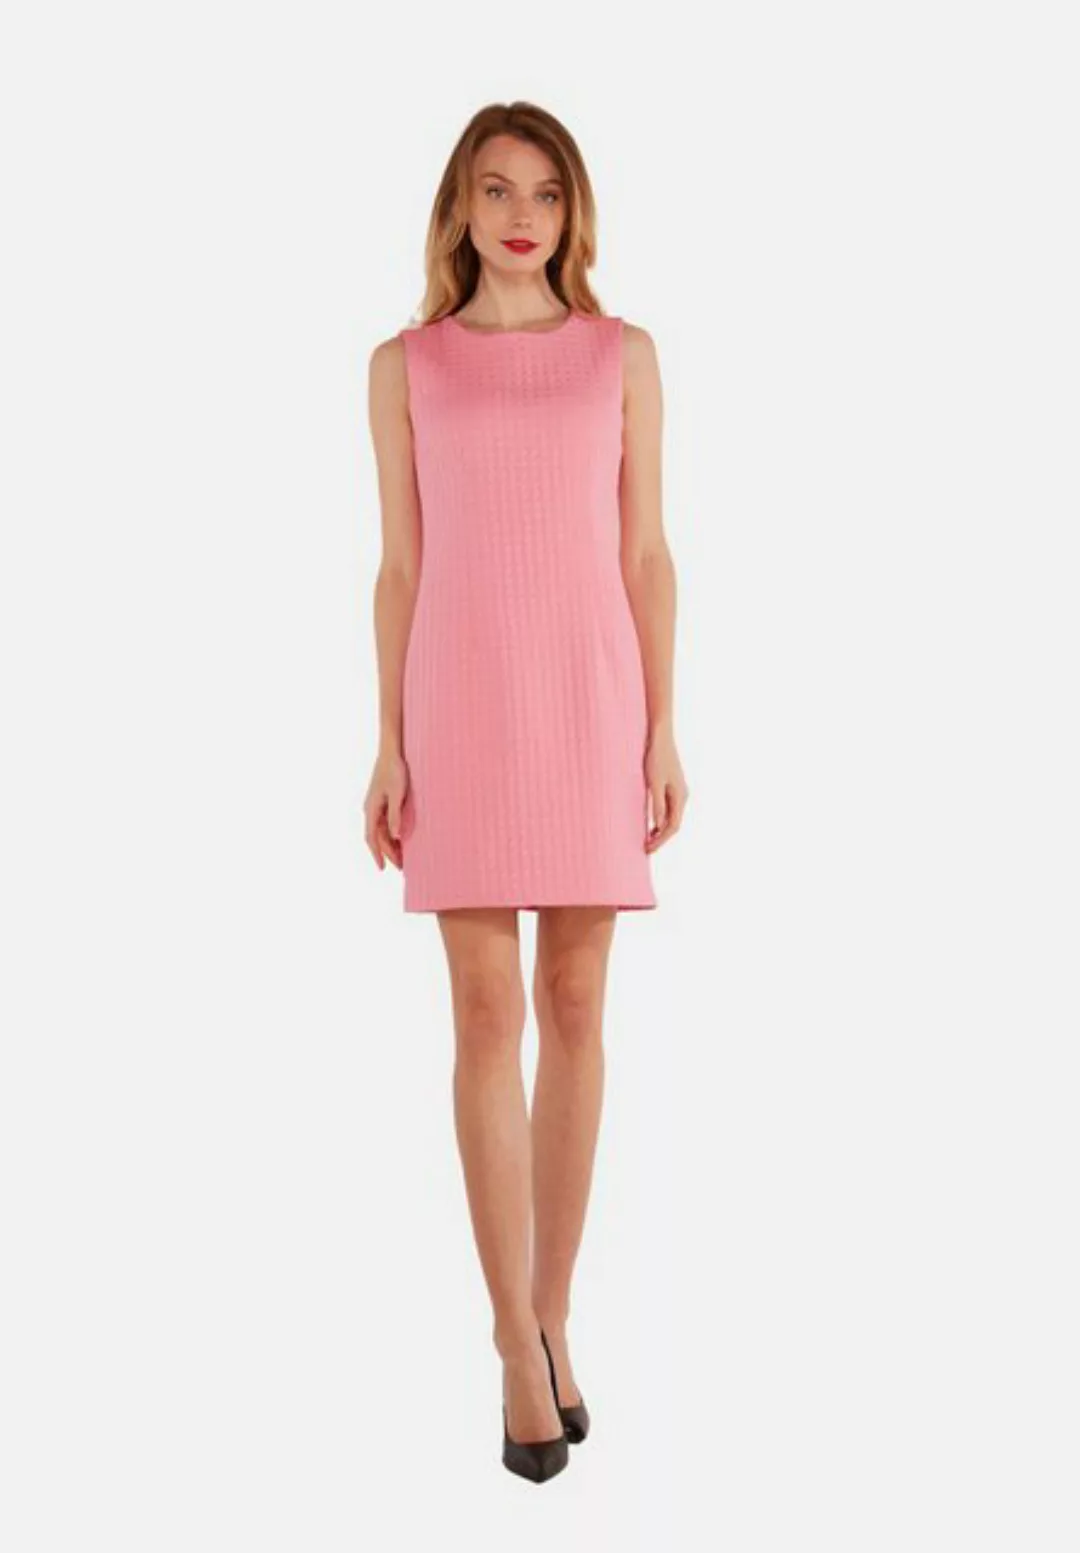 Tooche Etuikleid Pink Lady Dress Modern und trendig günstig online kaufen